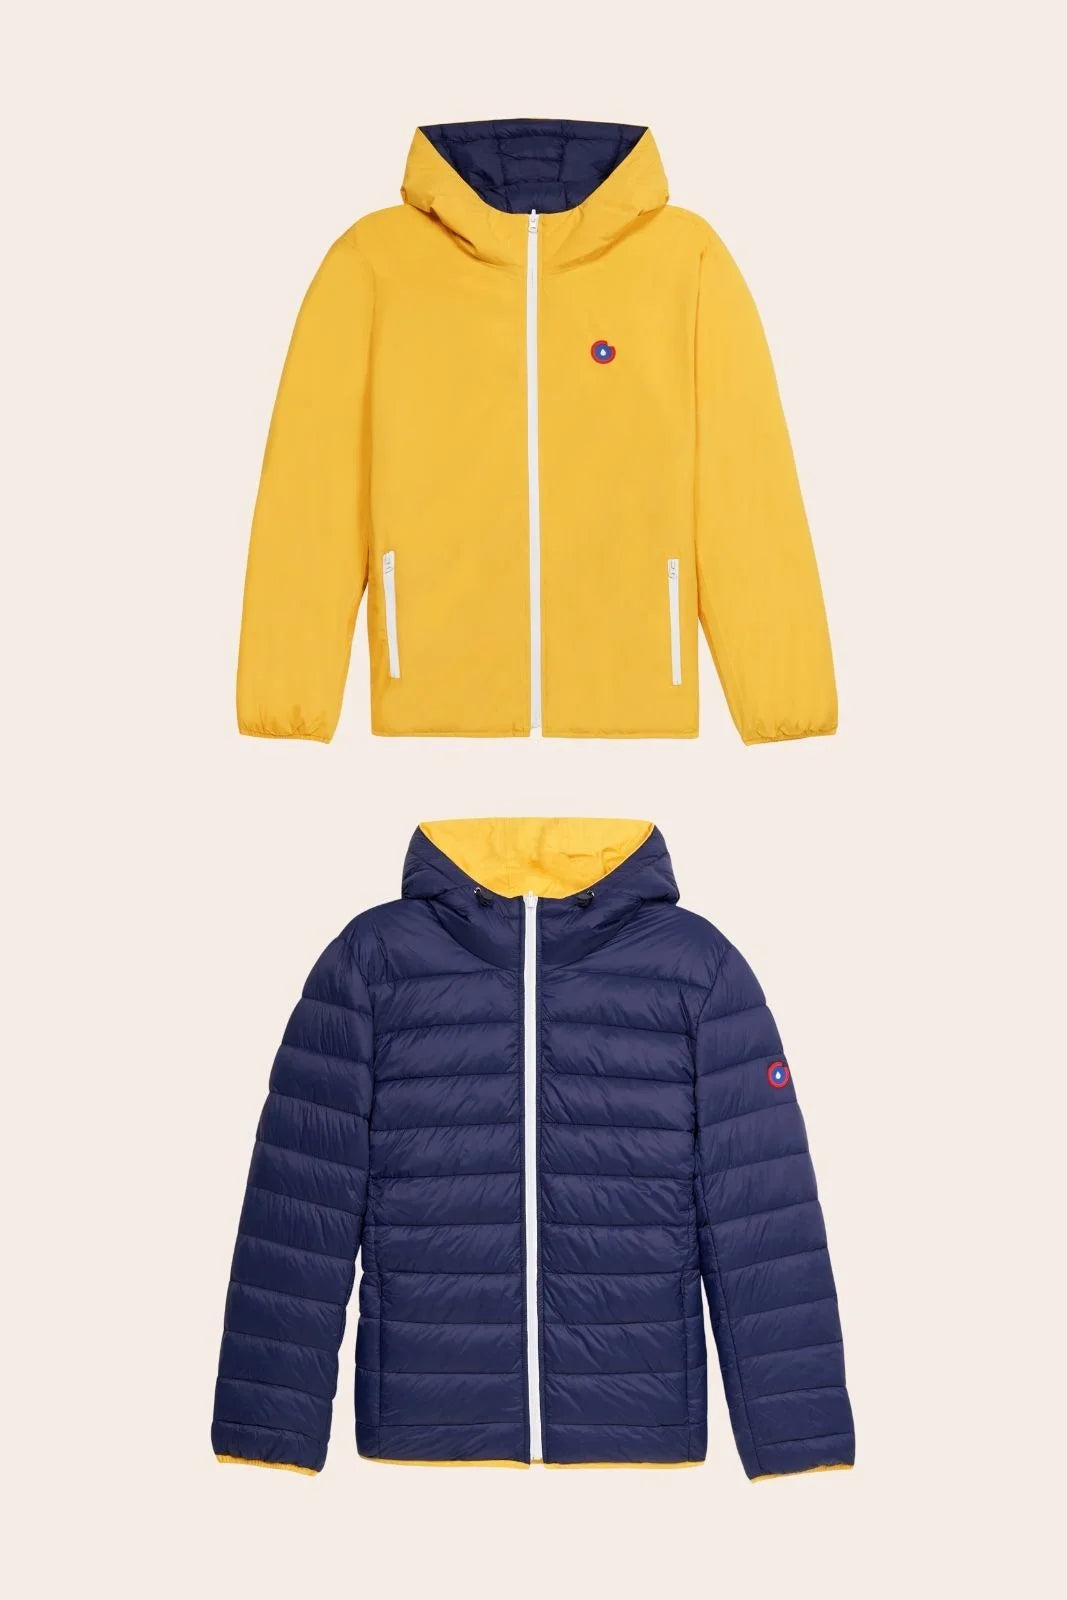  Charonne - Reversible down jacket - Flotte #couleur_citron-indigo